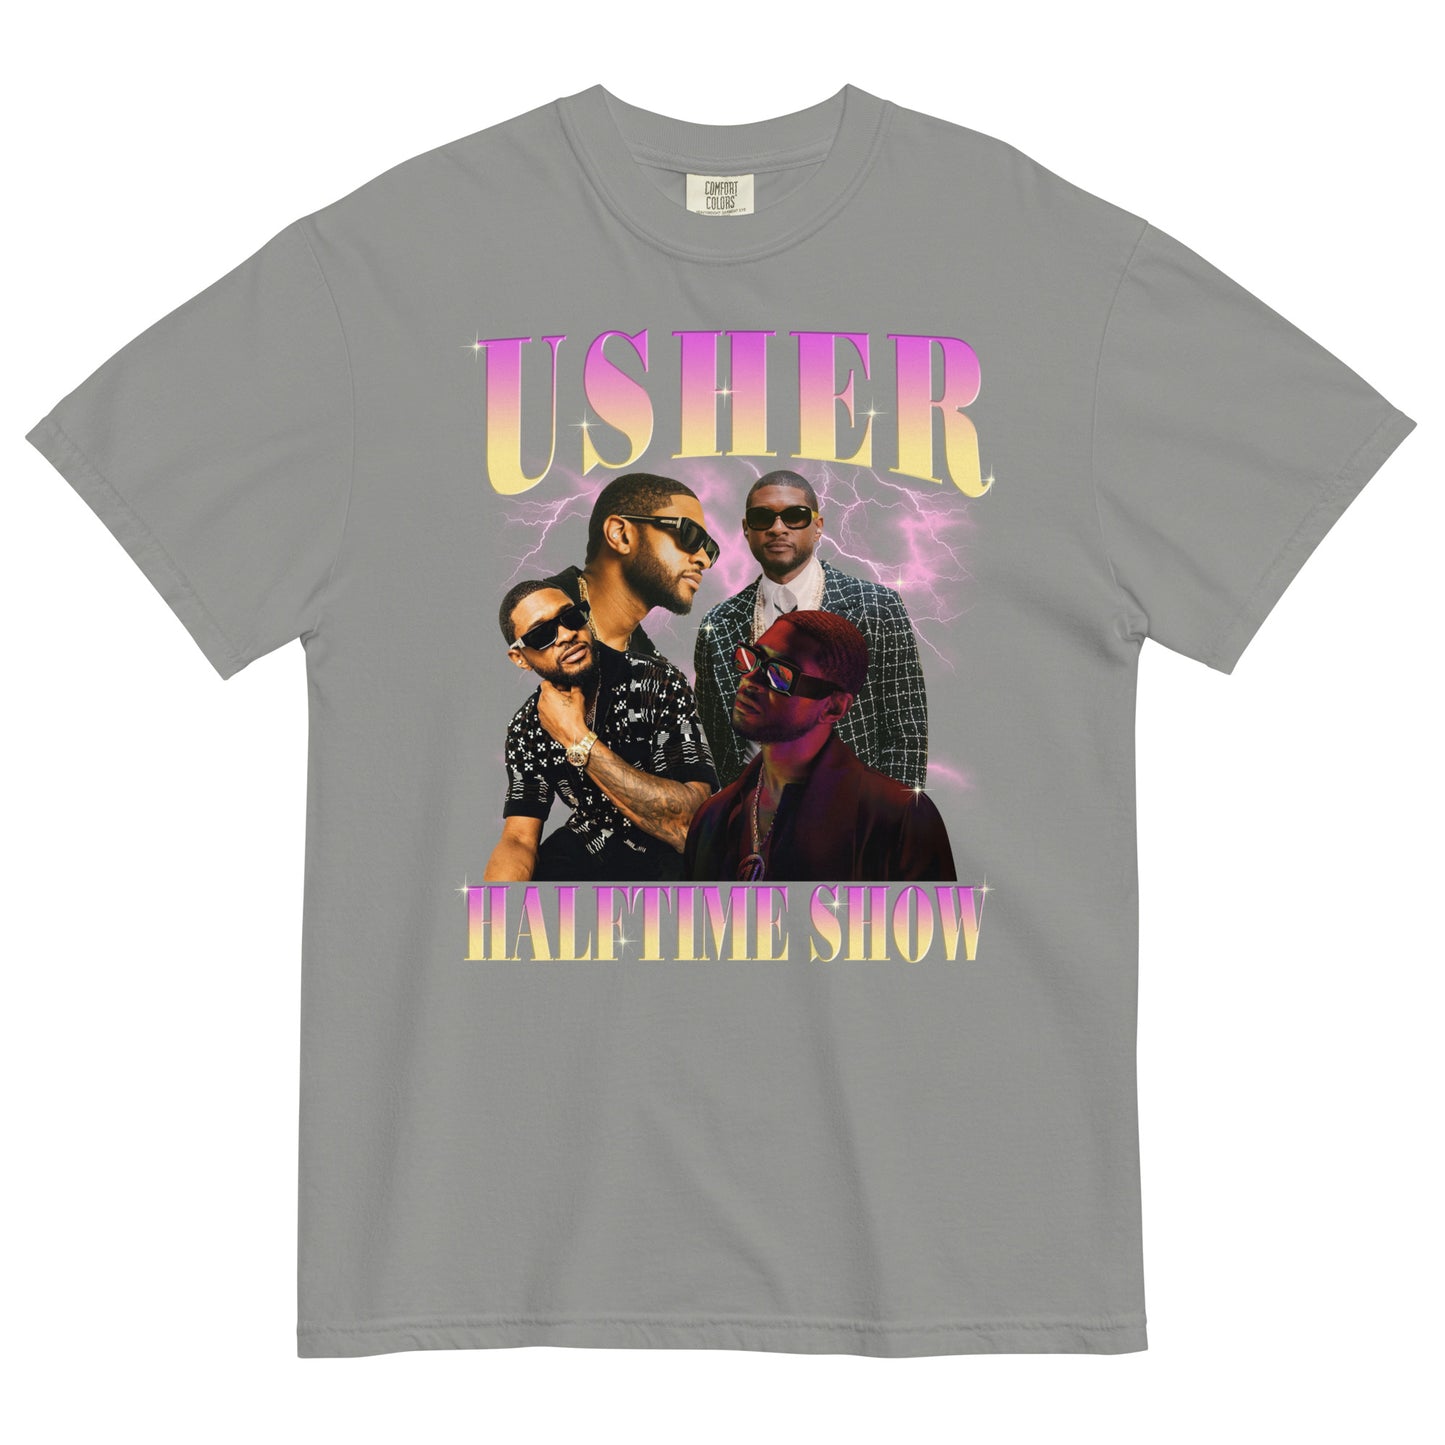 Usher halftime concert heavyweight t-shirt